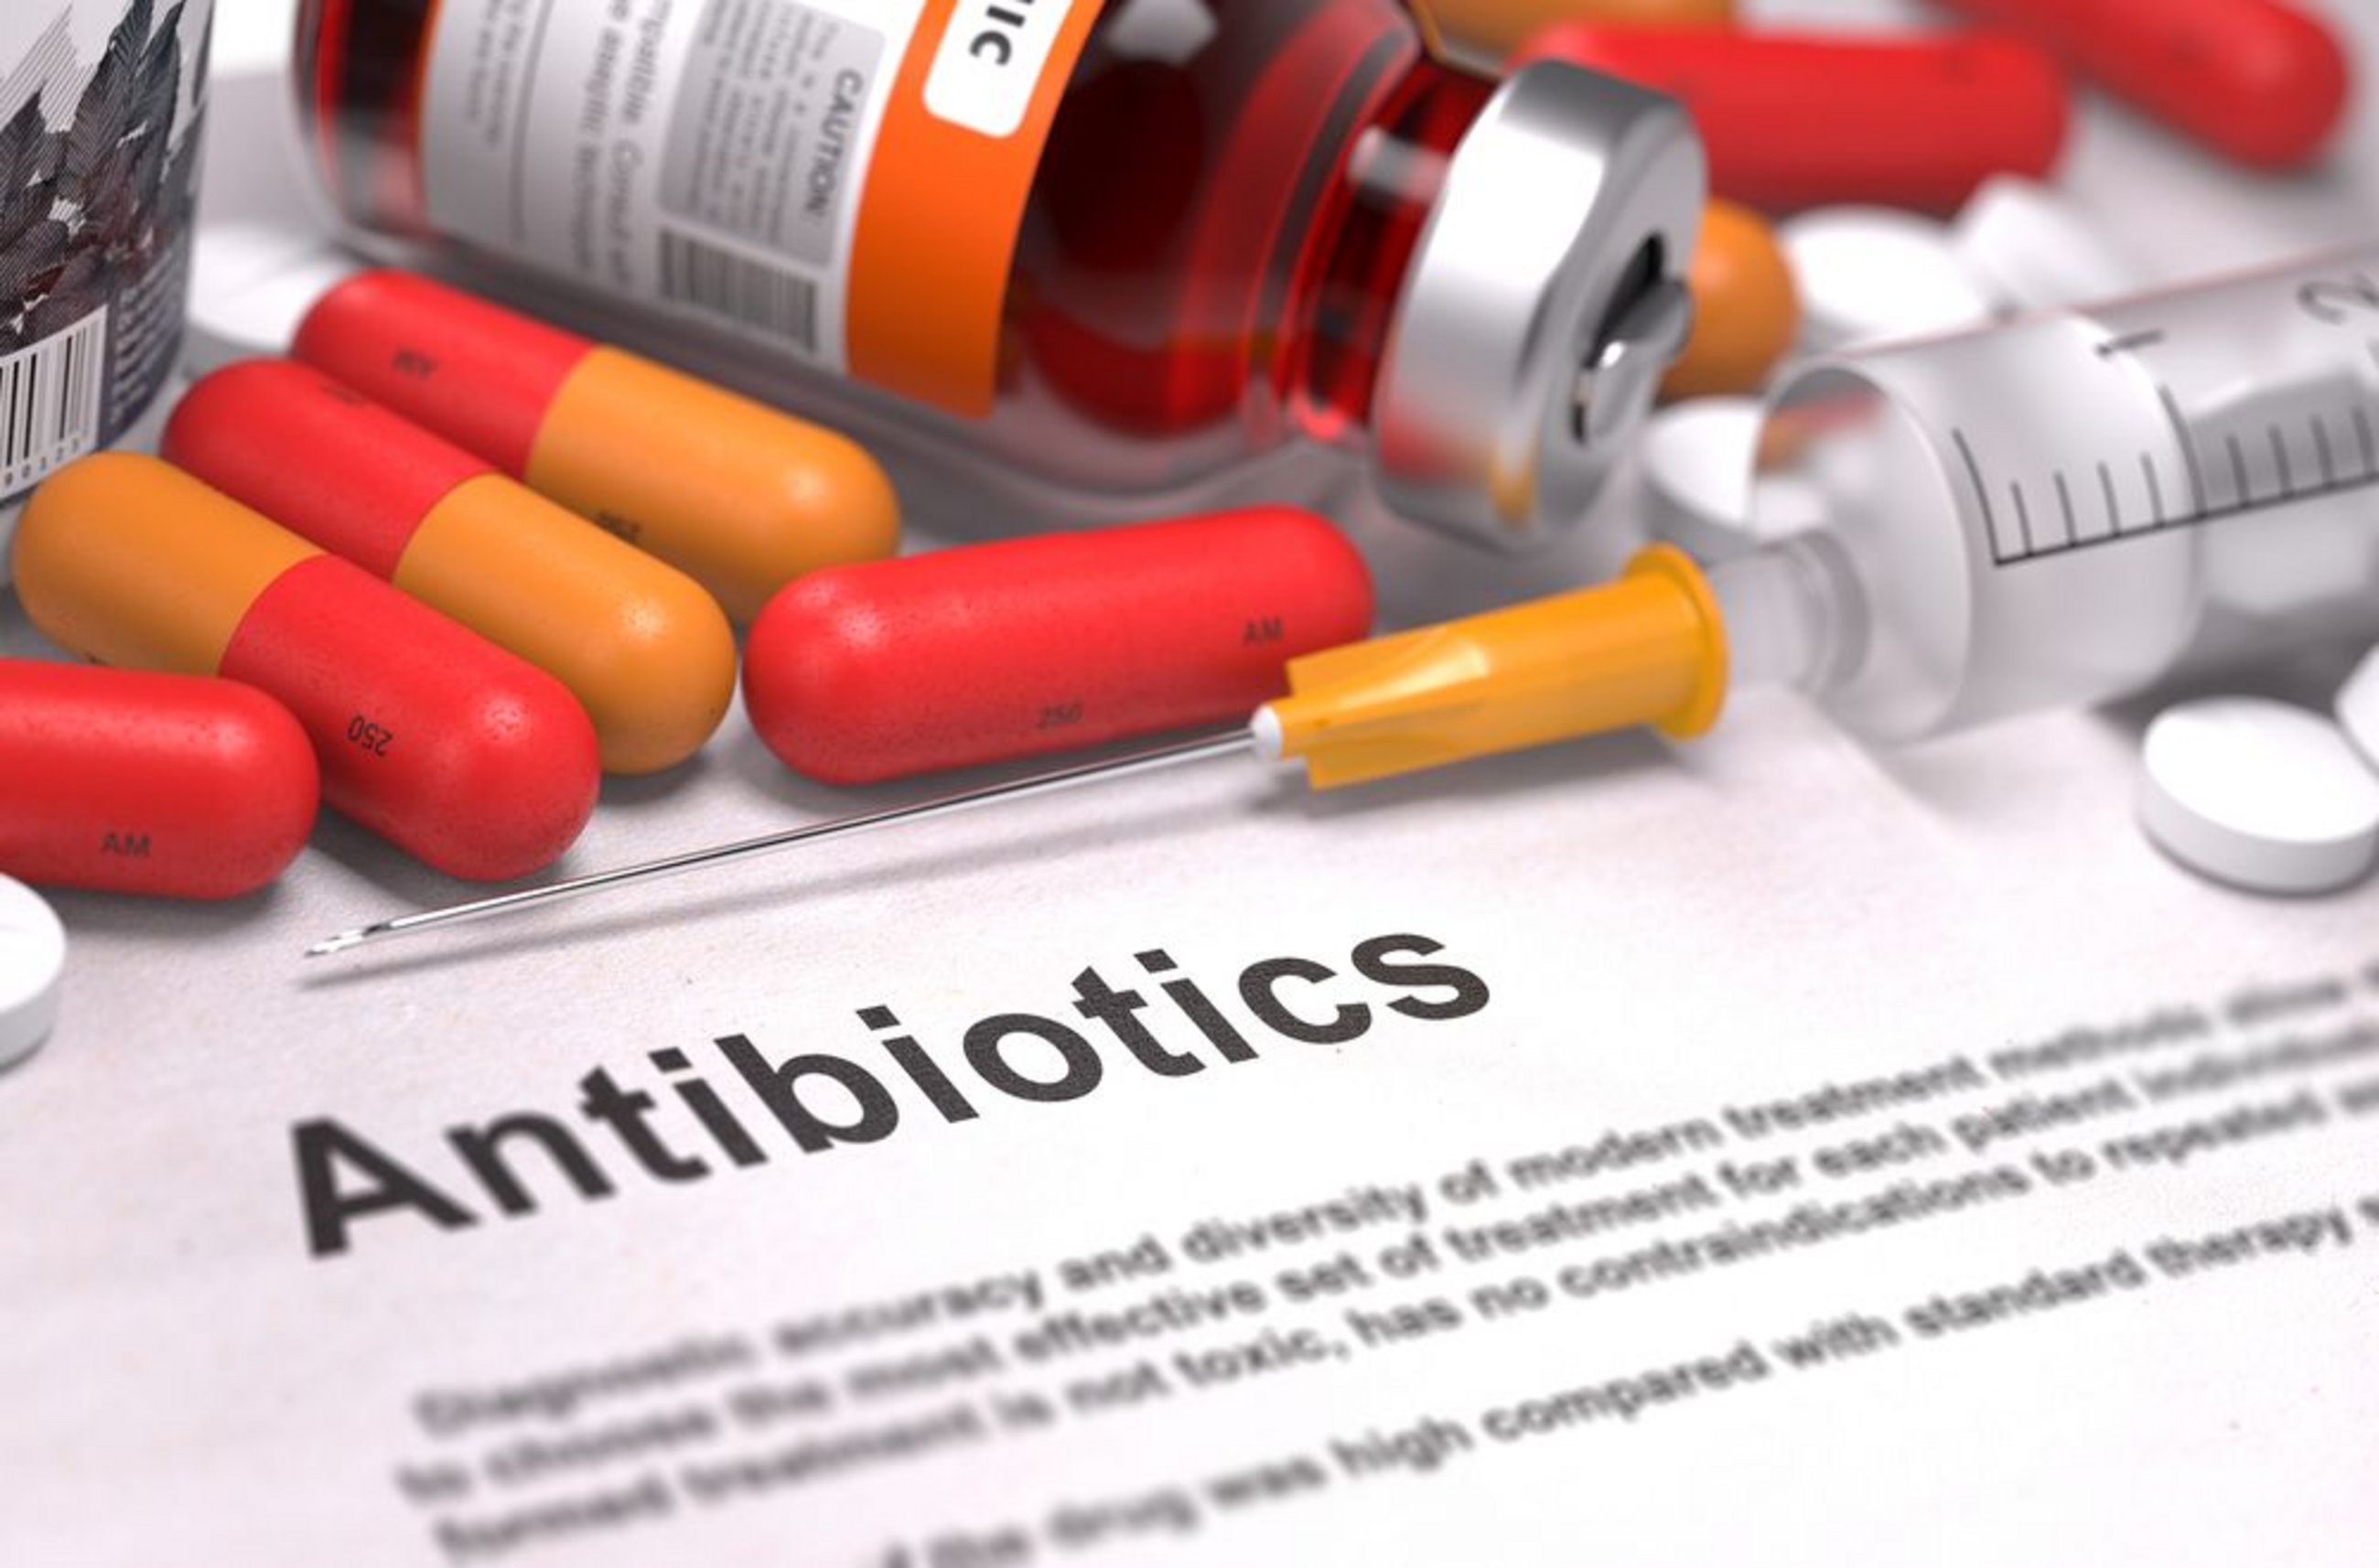 Antibiotiques : le cep Berlin/Fribourg conseille à l'UE et aux États membres d'agir rapidement